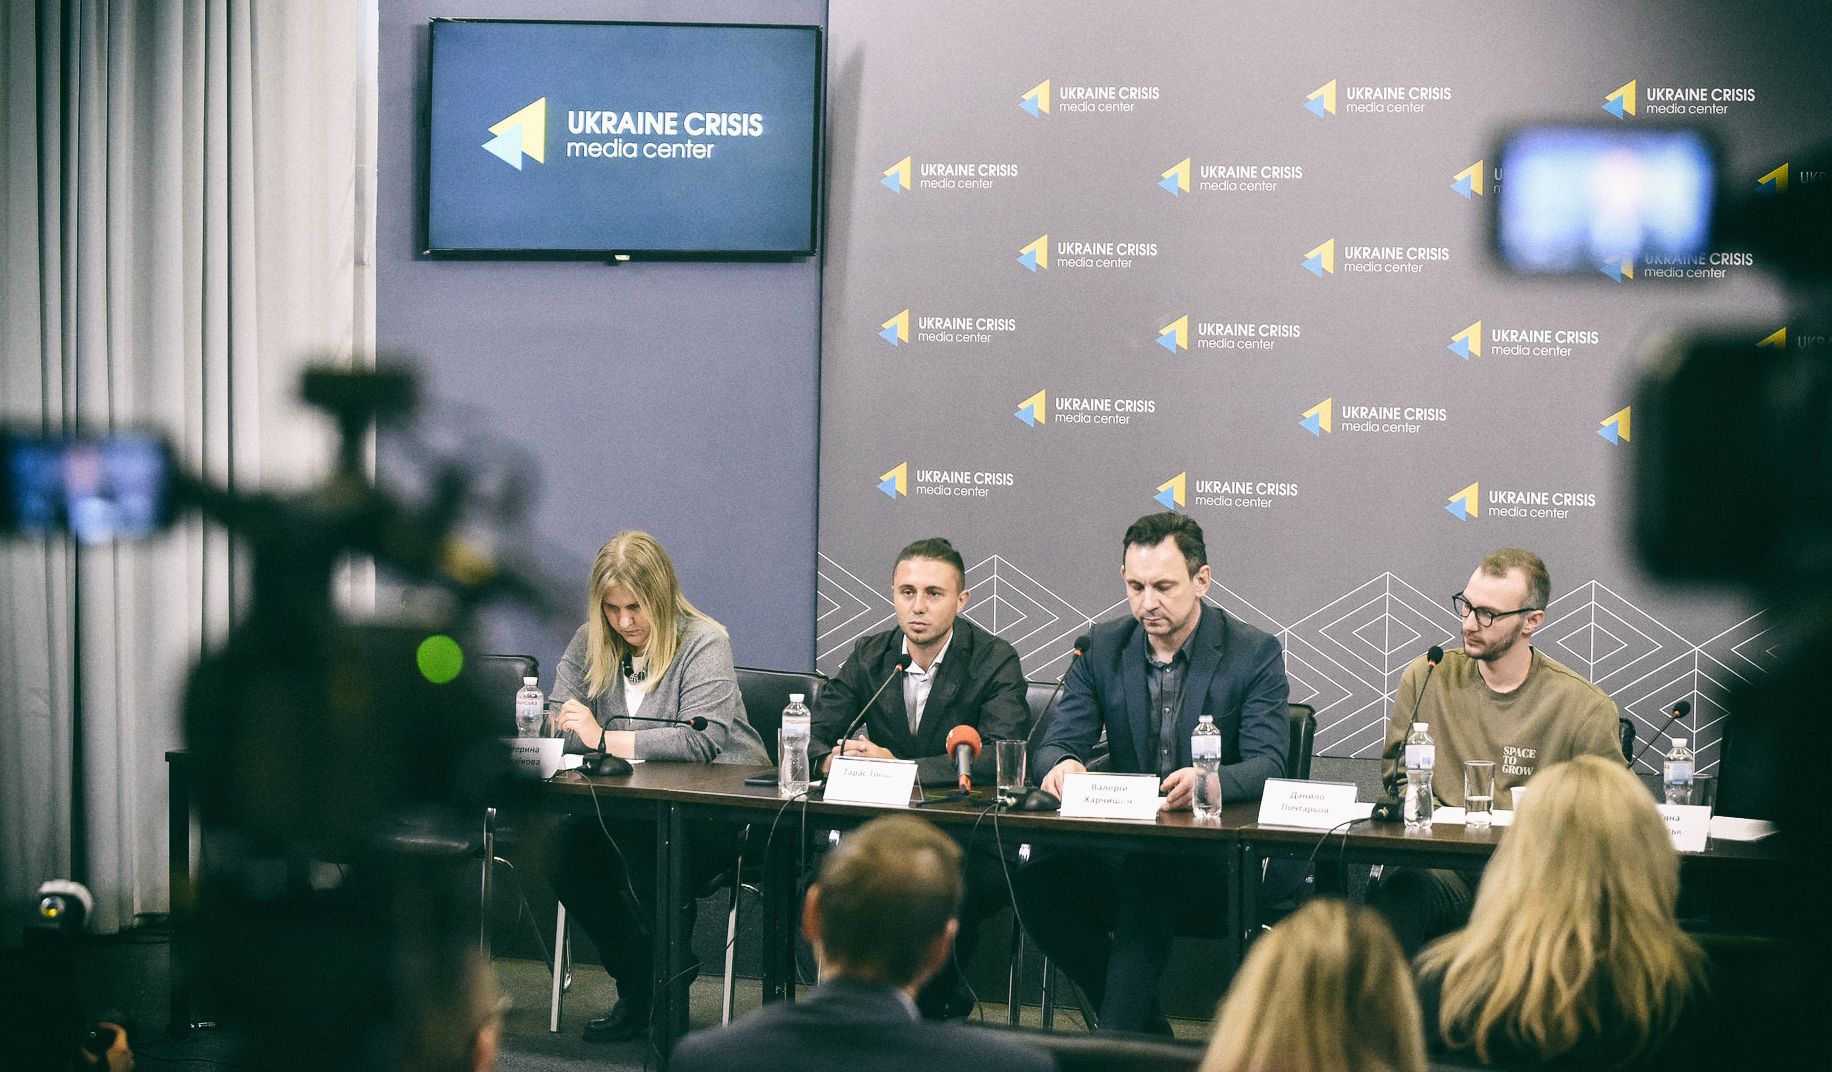 Куда исчезли миллионы роялти, как исправить систему и добиться справедливых выплат: в Киеве состоялась пресс-конференция авторской организации